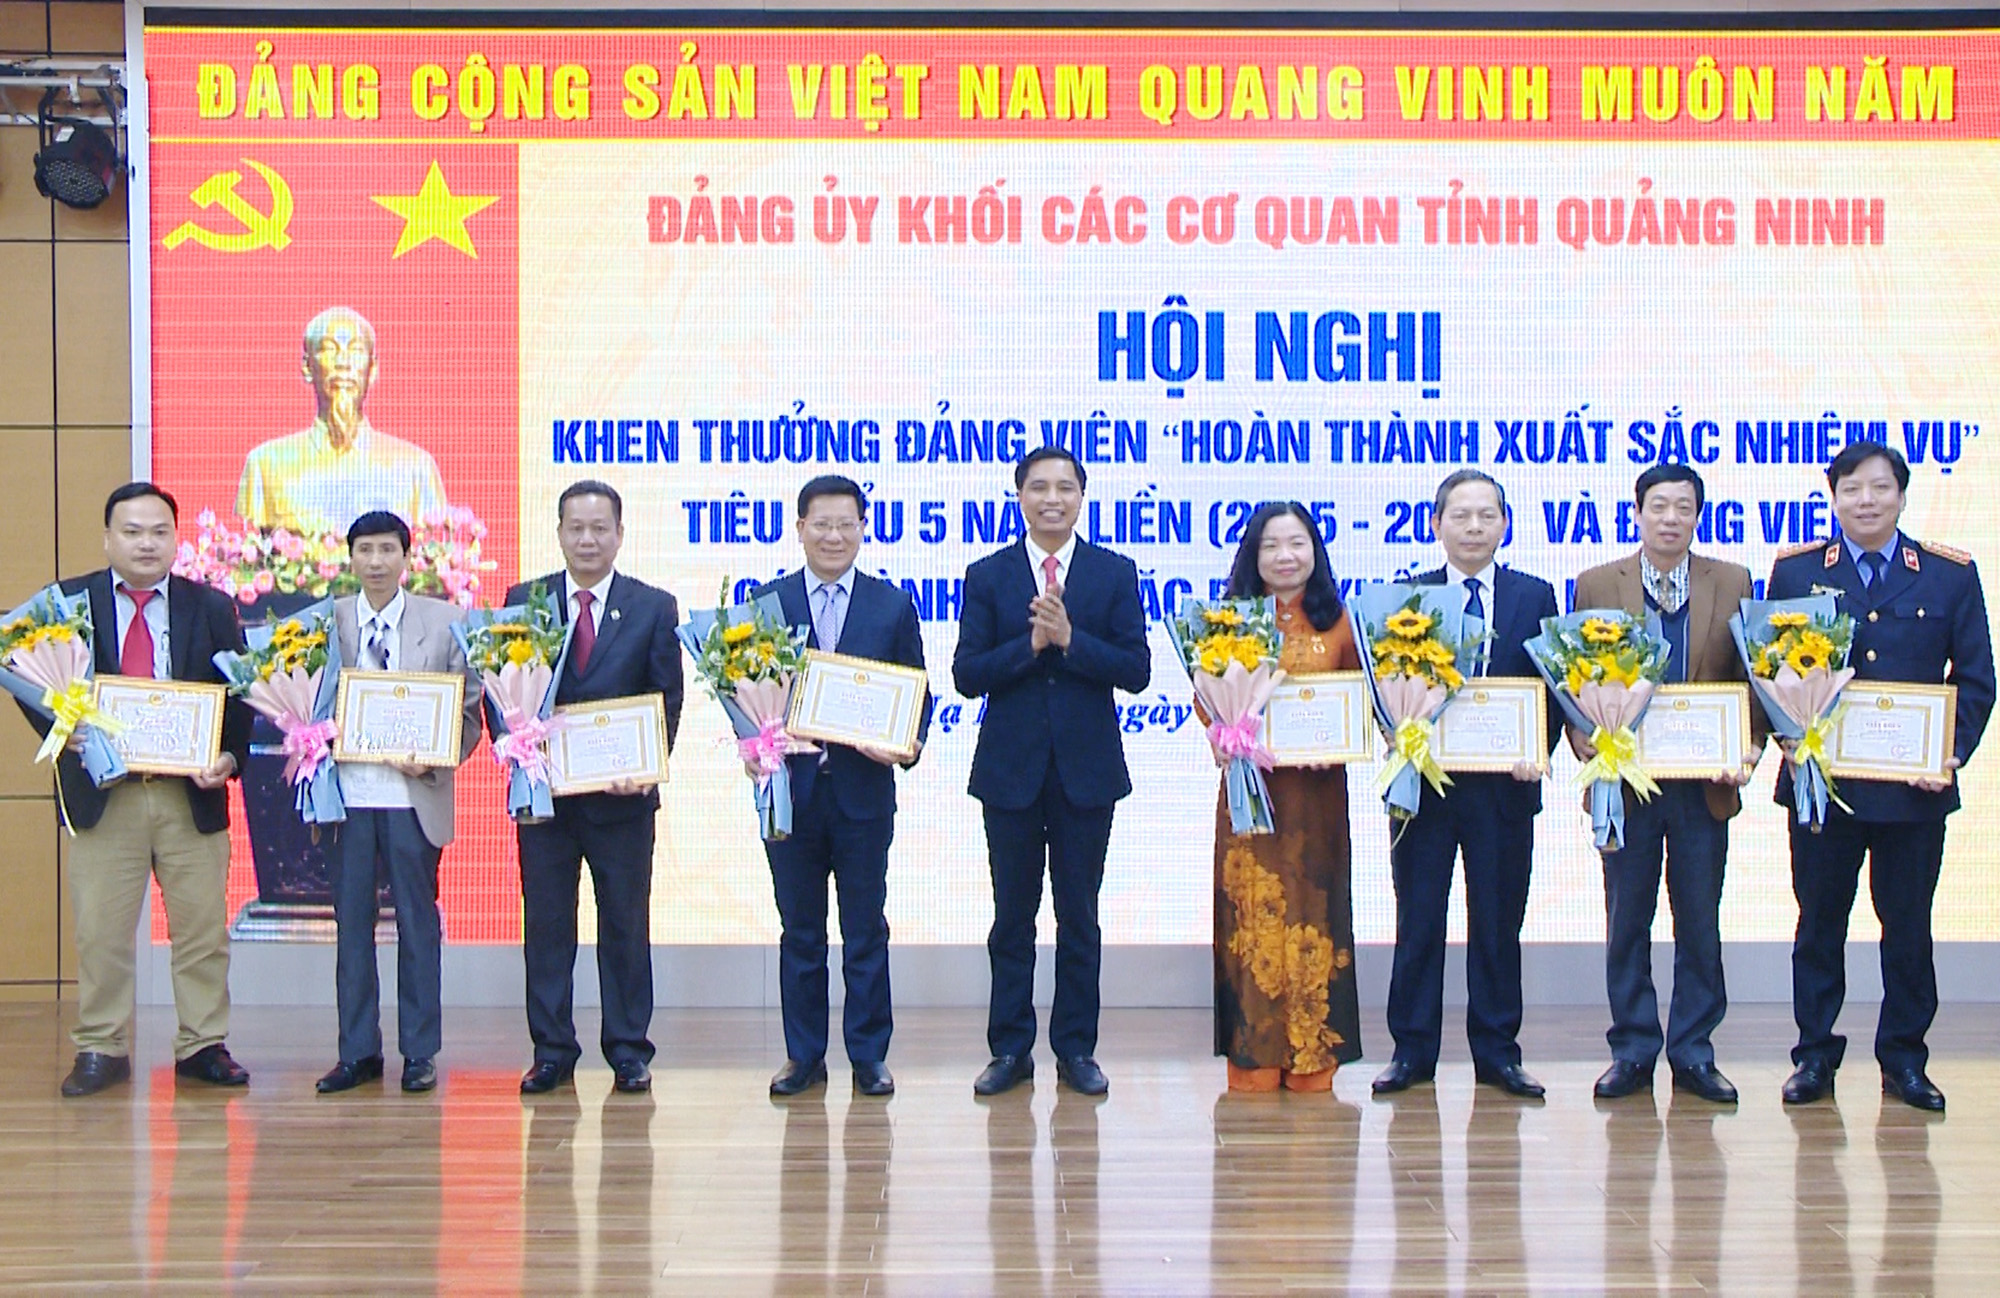 Đảng ủy Khối Các cơ quan tỉnh tổ chức trao huy hiệu 30 năm tuổi Đảng